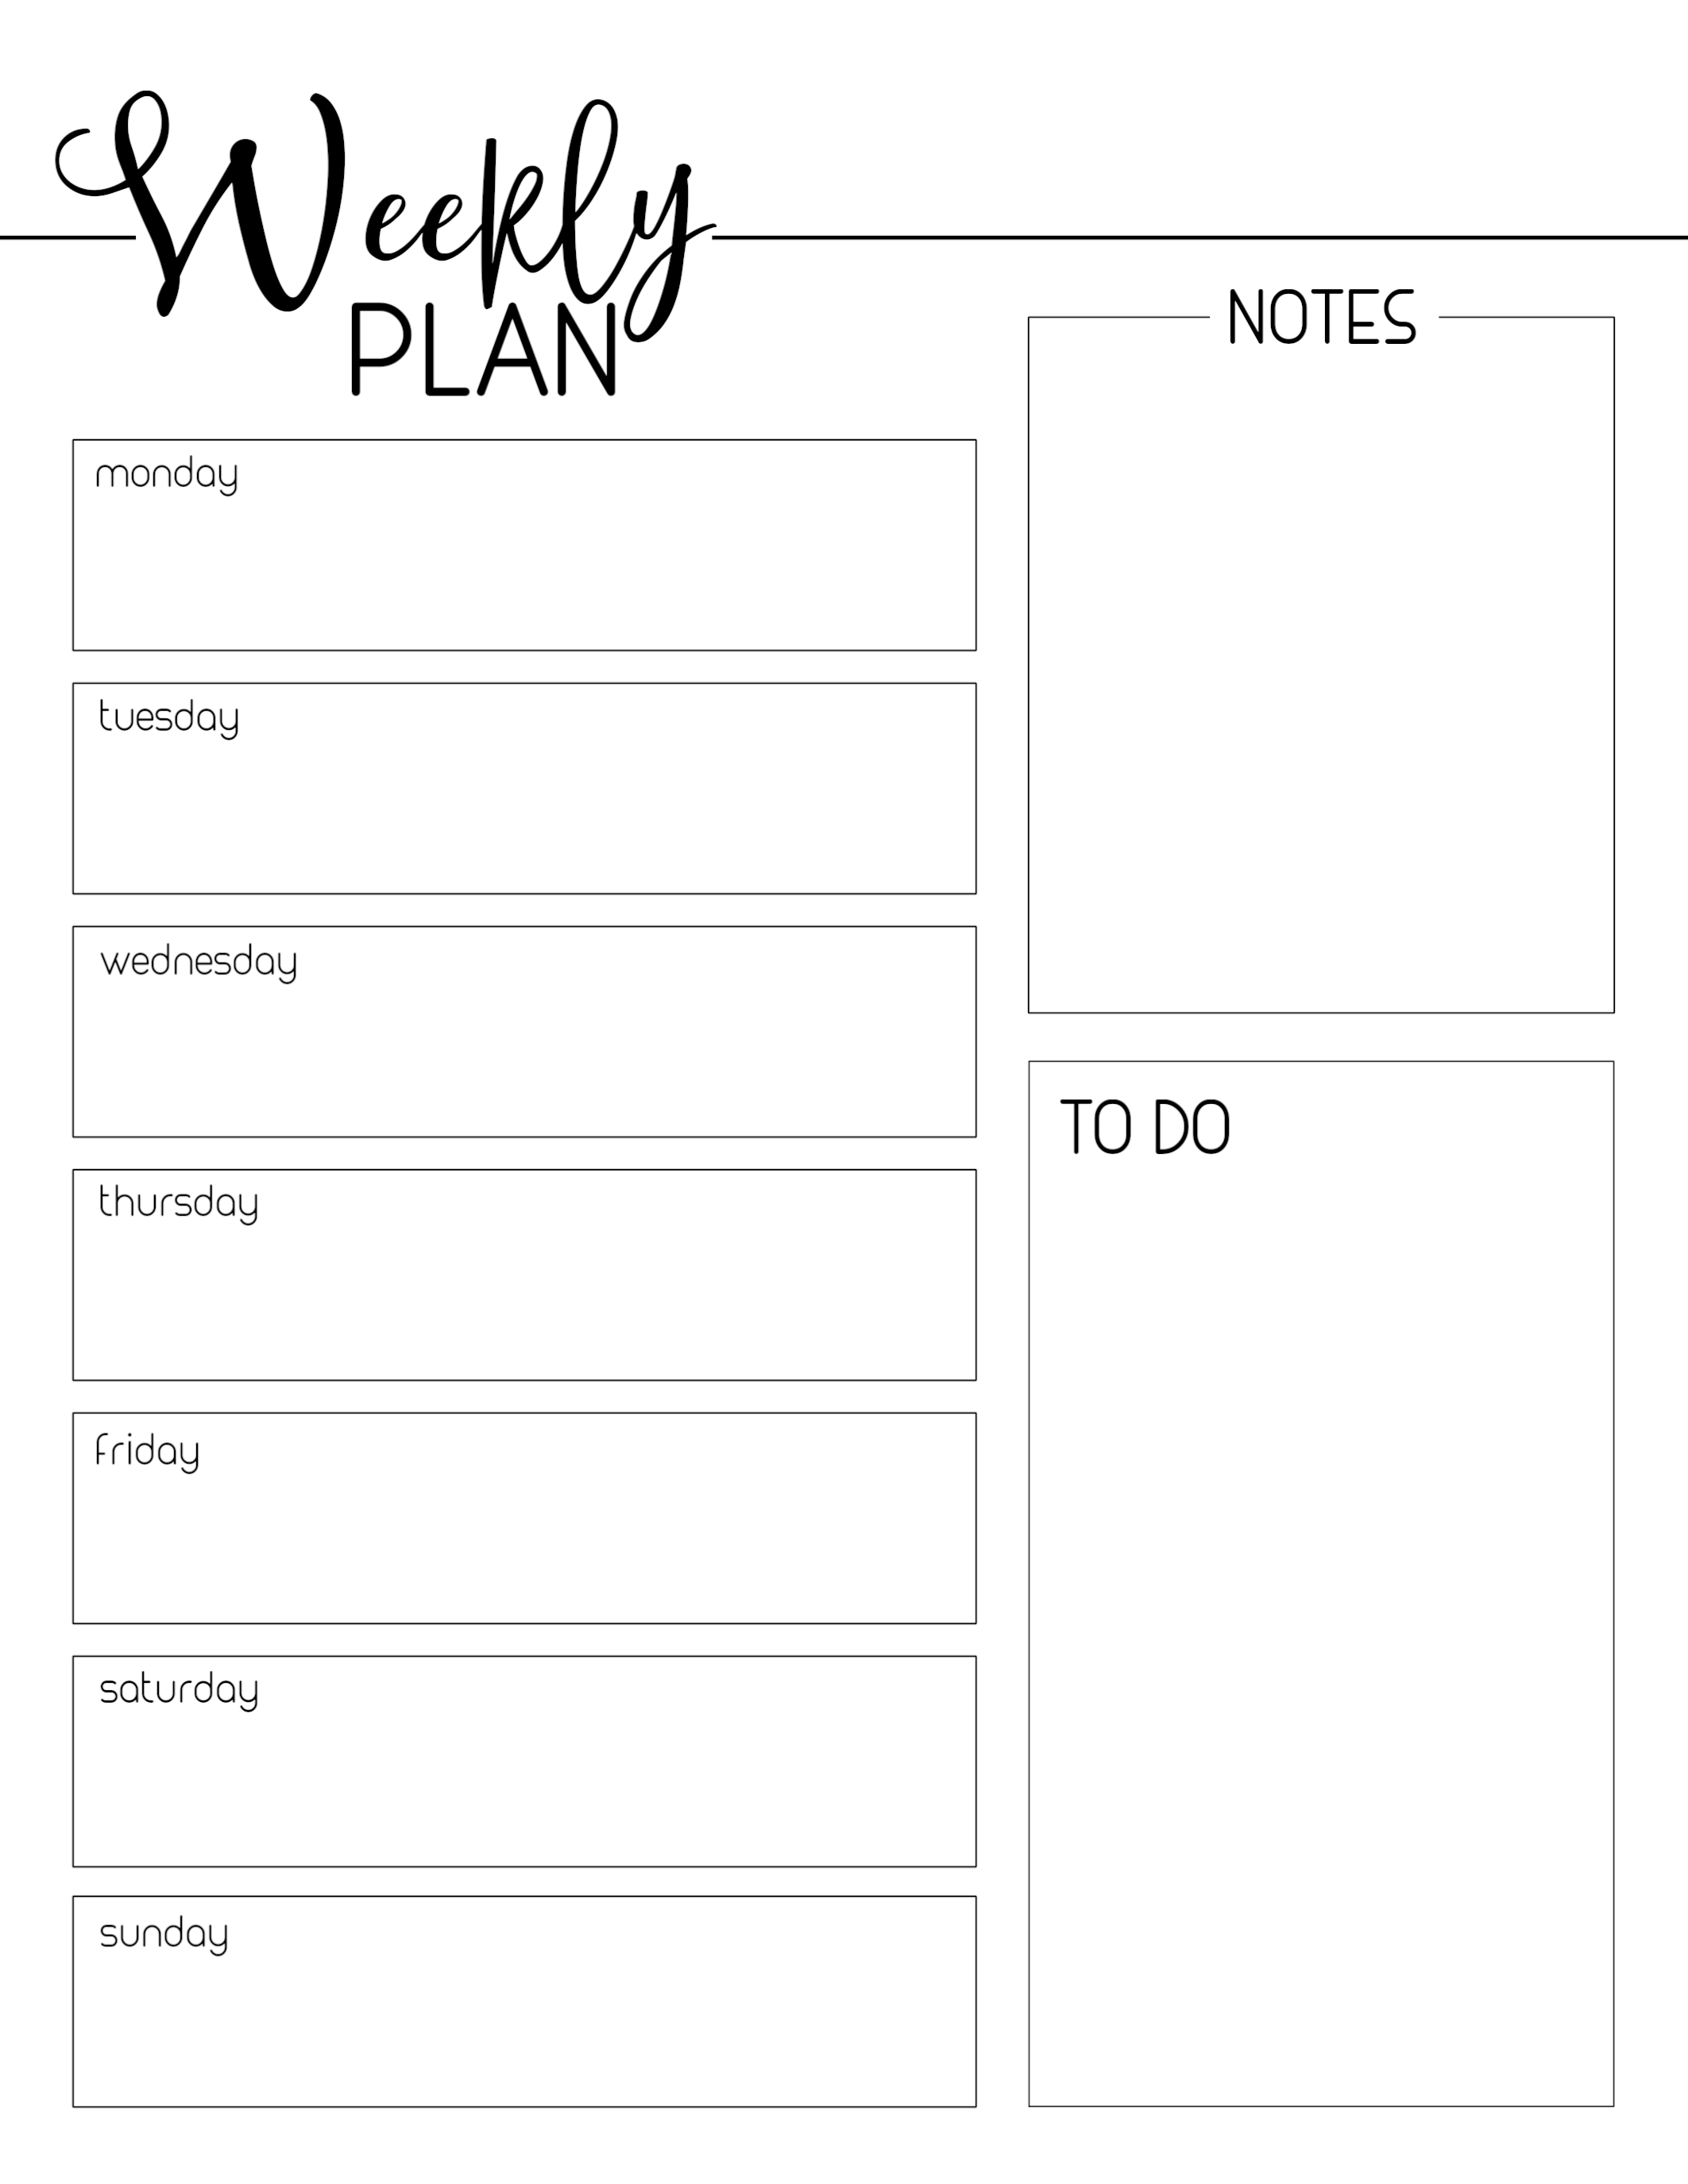 Weekly Planner Printable